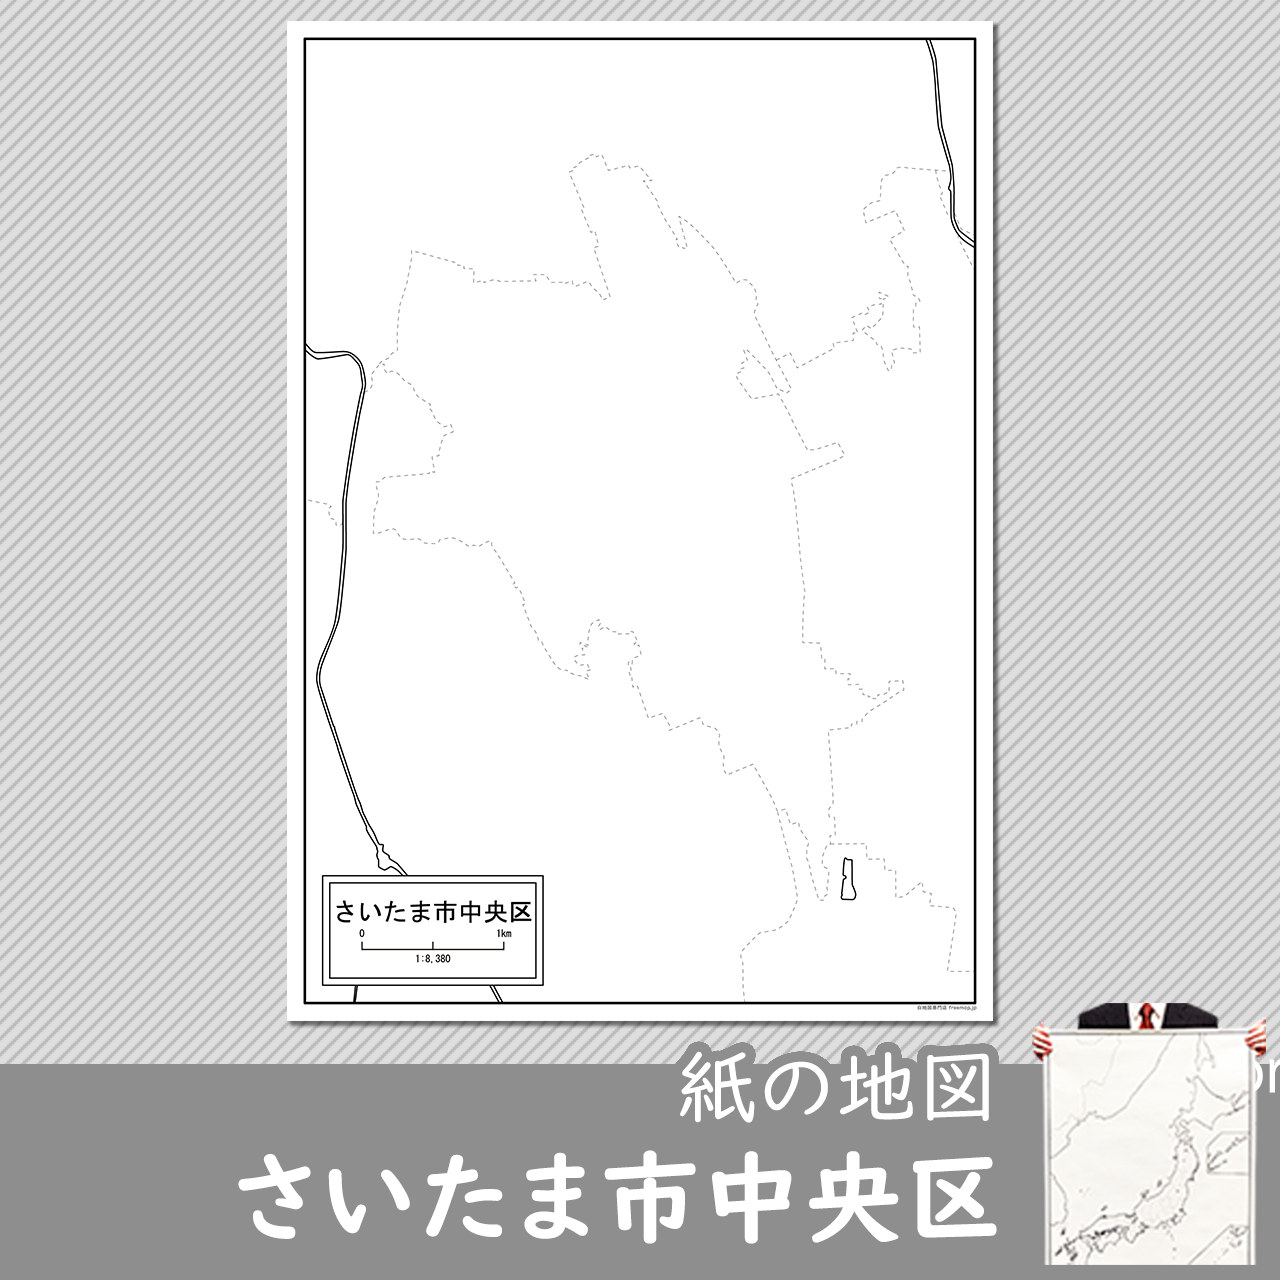 さいたま市中央区の紙の白地図のサムネイル